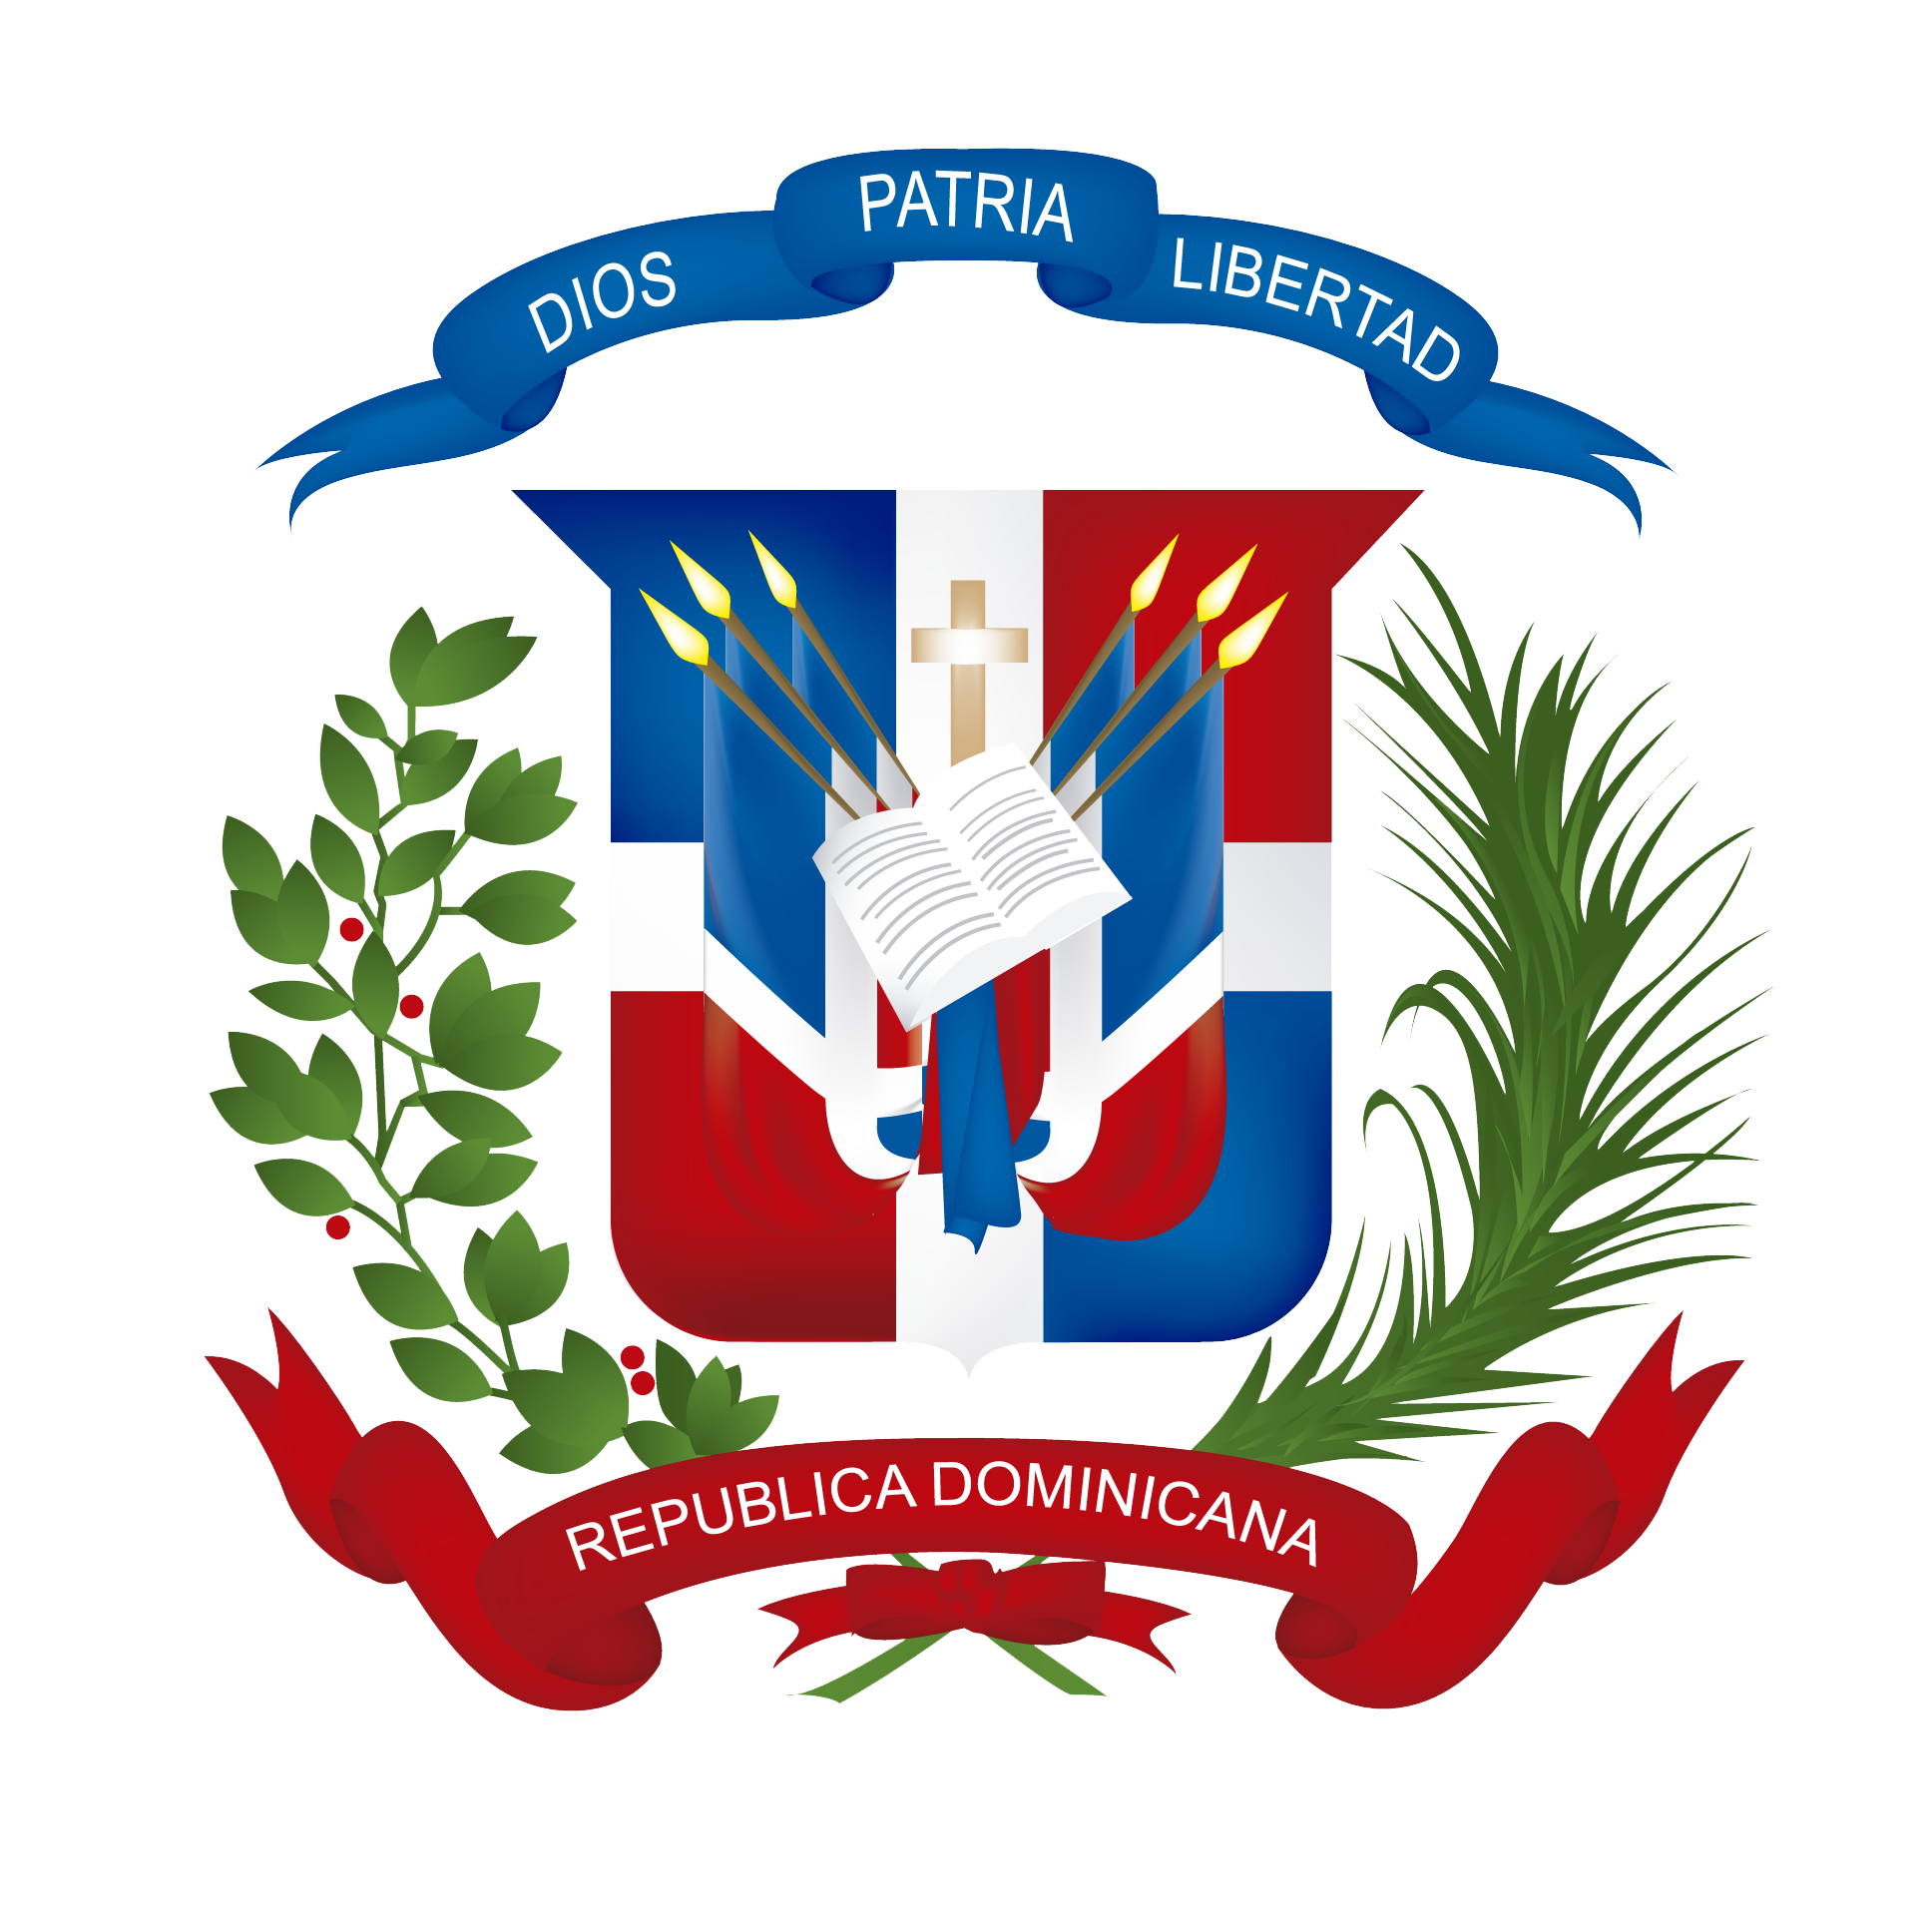 Герб Доминиканы. Герб Доминиканской Республики. Республика Доминикана герб. Доминиканская Республика флаг и герб.